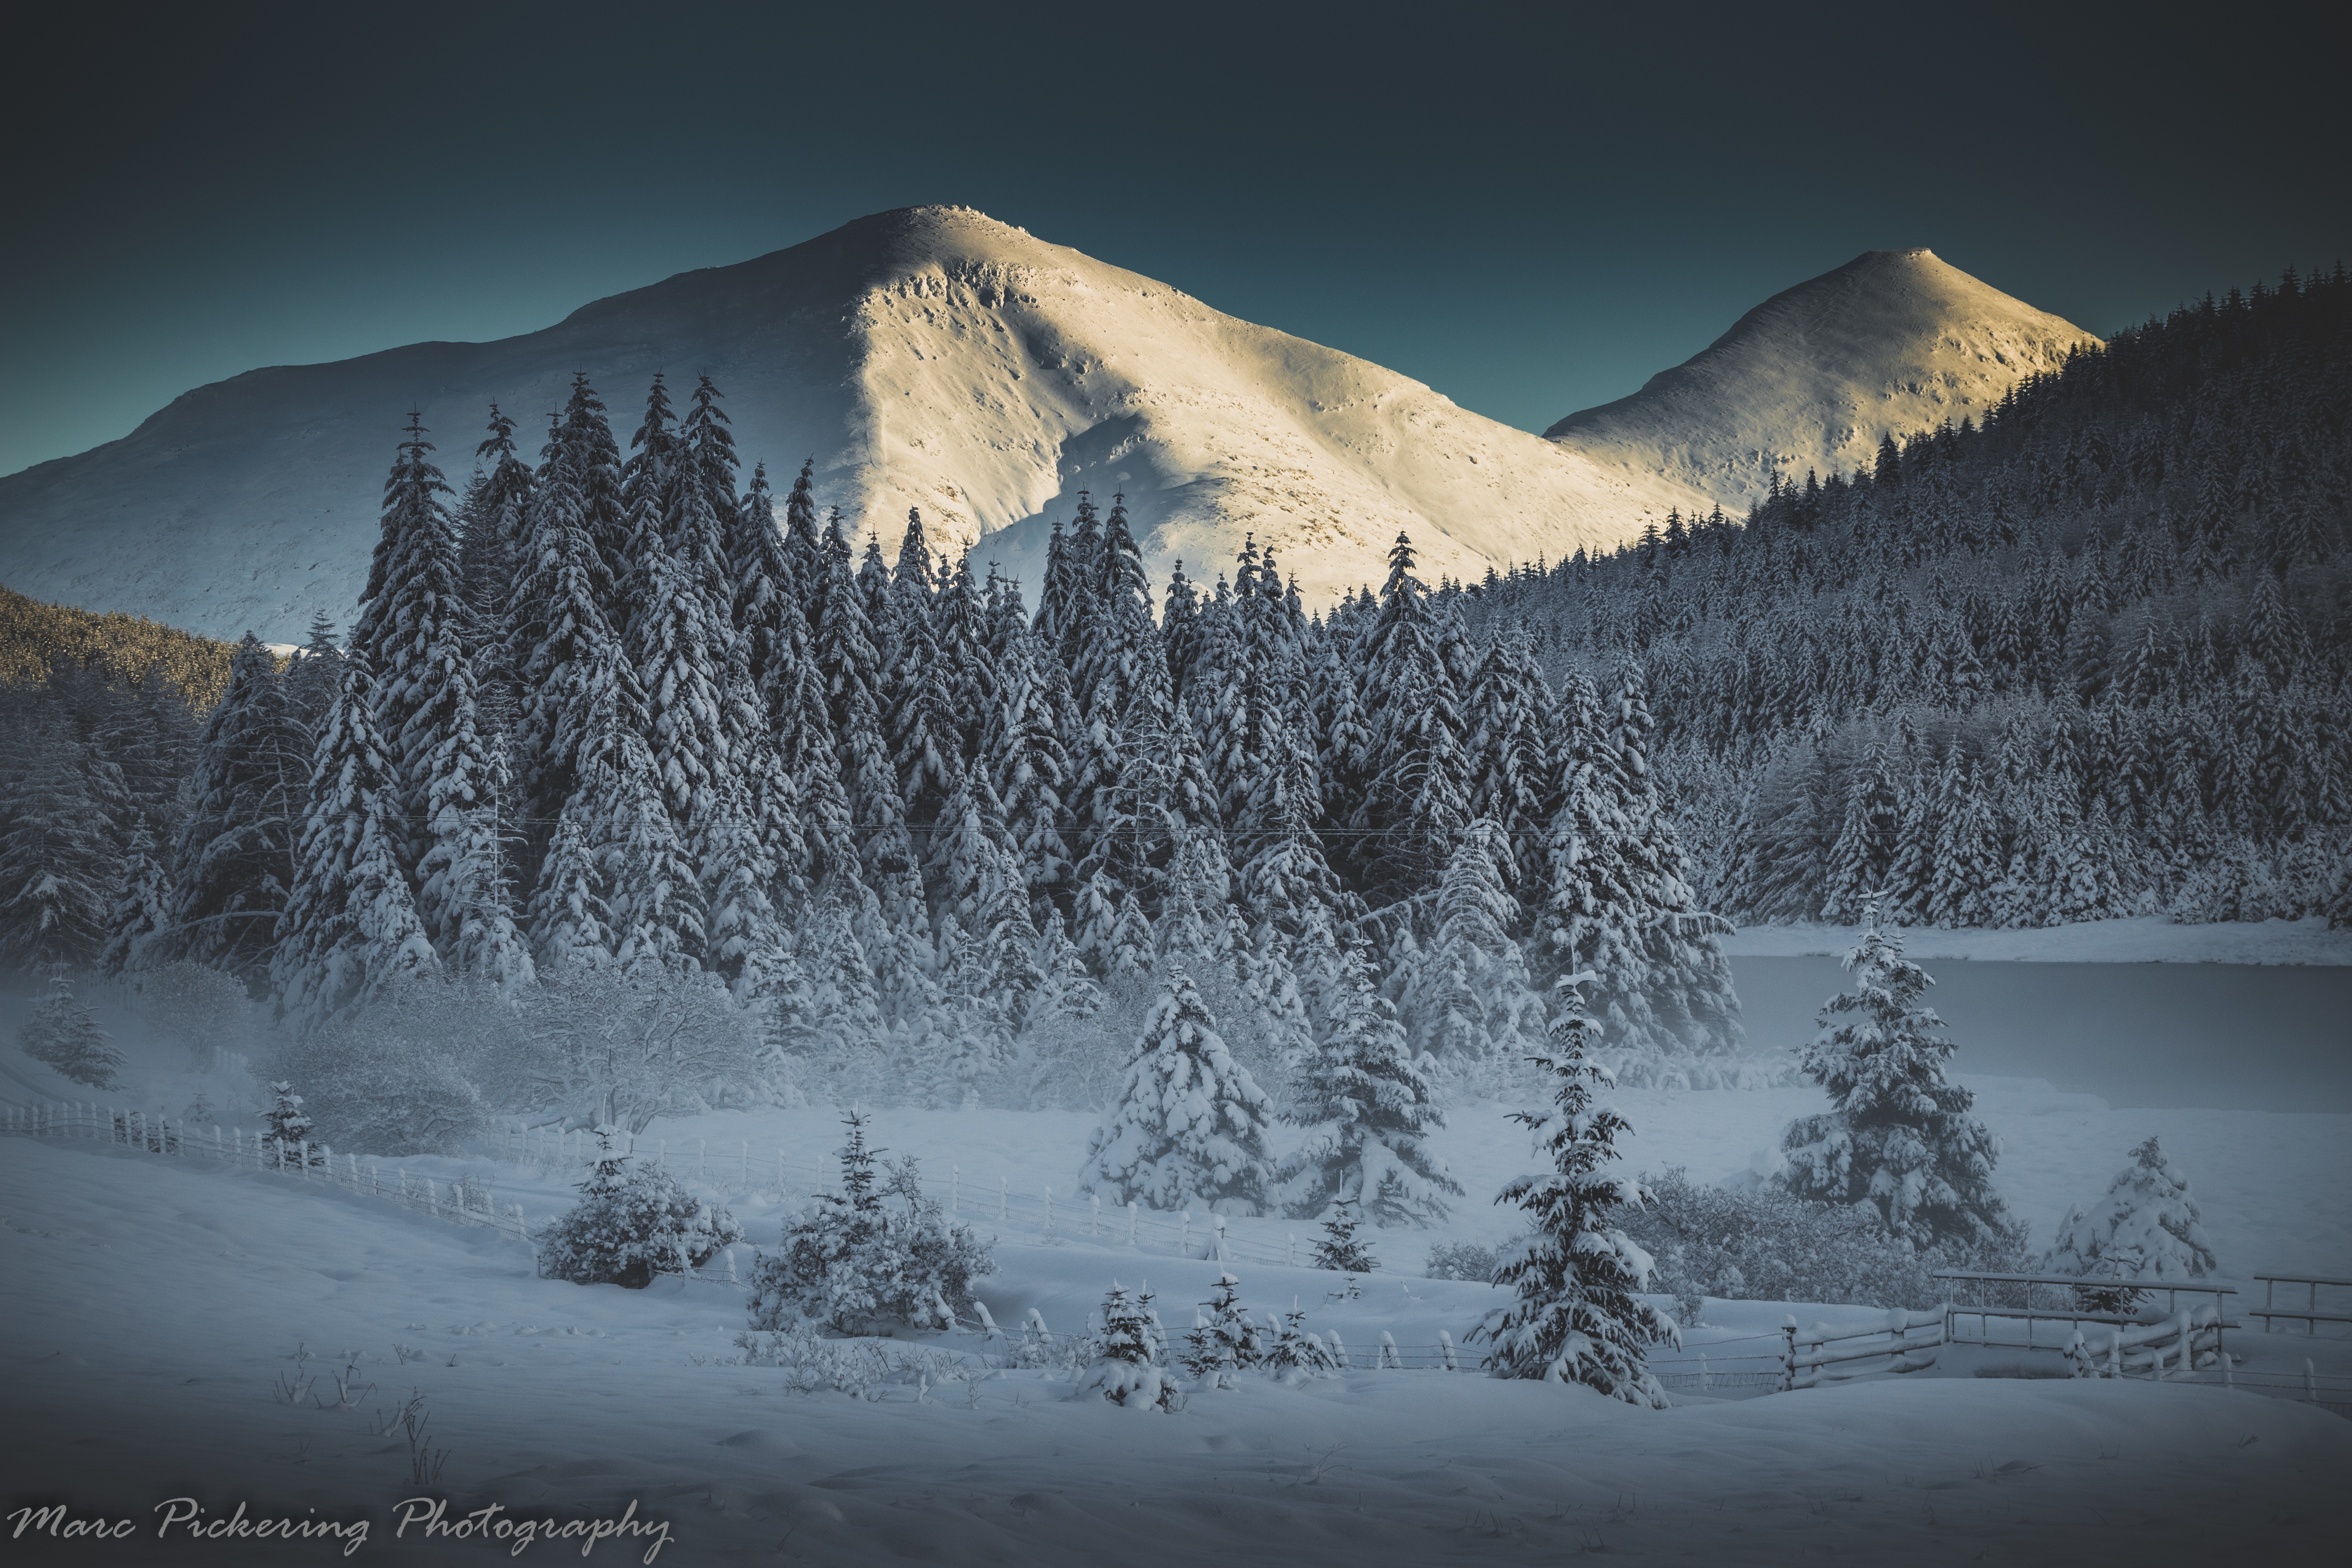 Winter Wonderland at daybreak